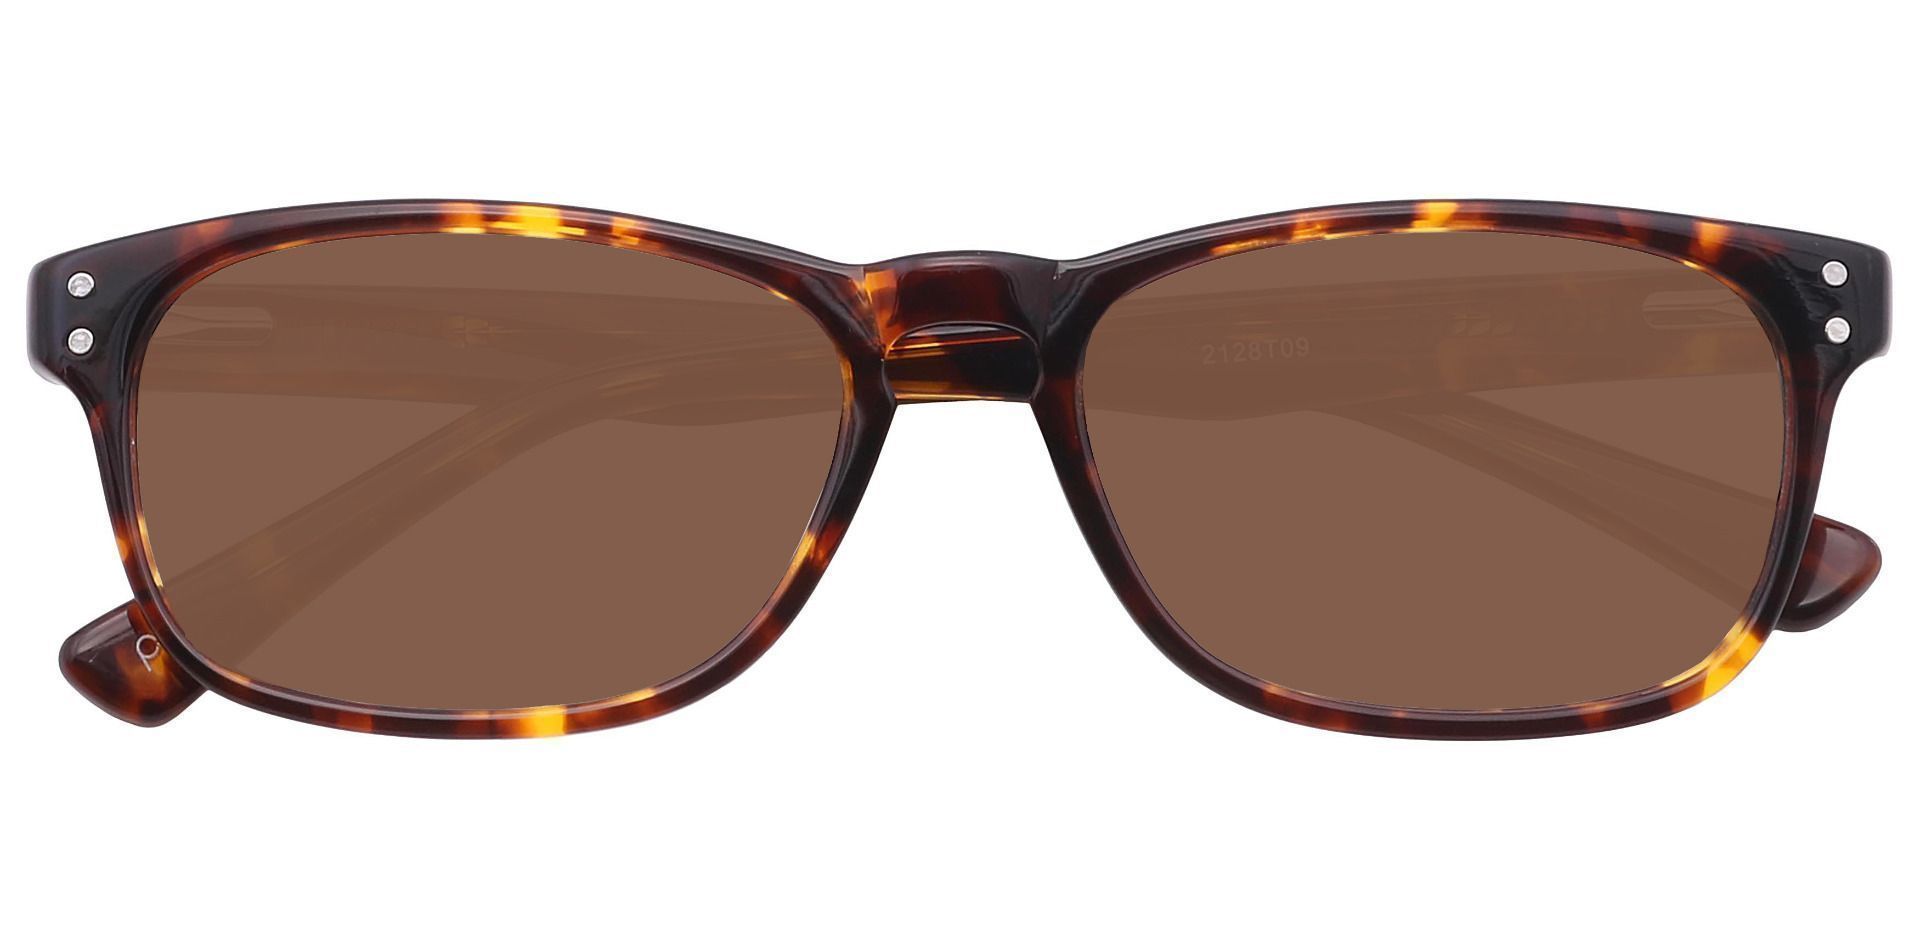 Morris Rectangle Prescription Sunglasses - Tortoise Frame With Brown Lenses